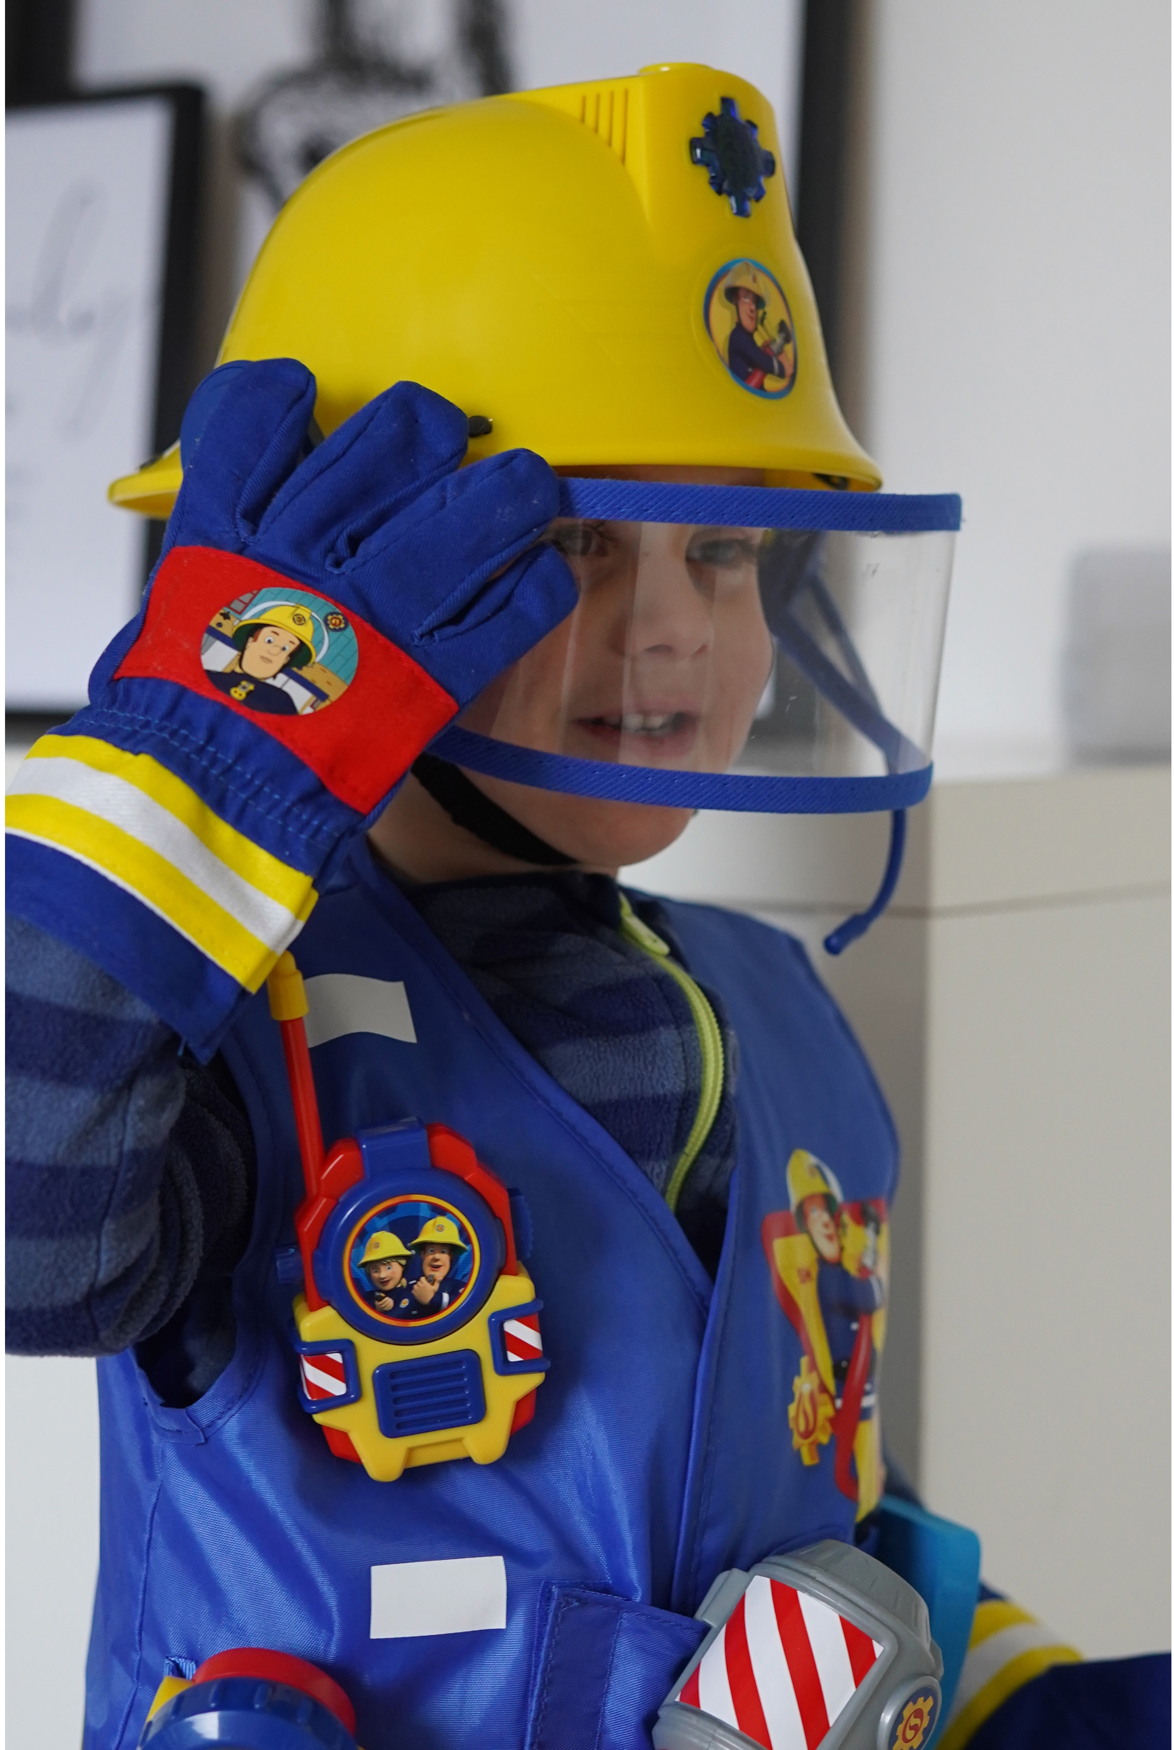 Spielwaren Express - Simba Spielzeug Spielwelt Feuerwehrmann 109252365 Funktion Helm Feuerwehr mit Sam